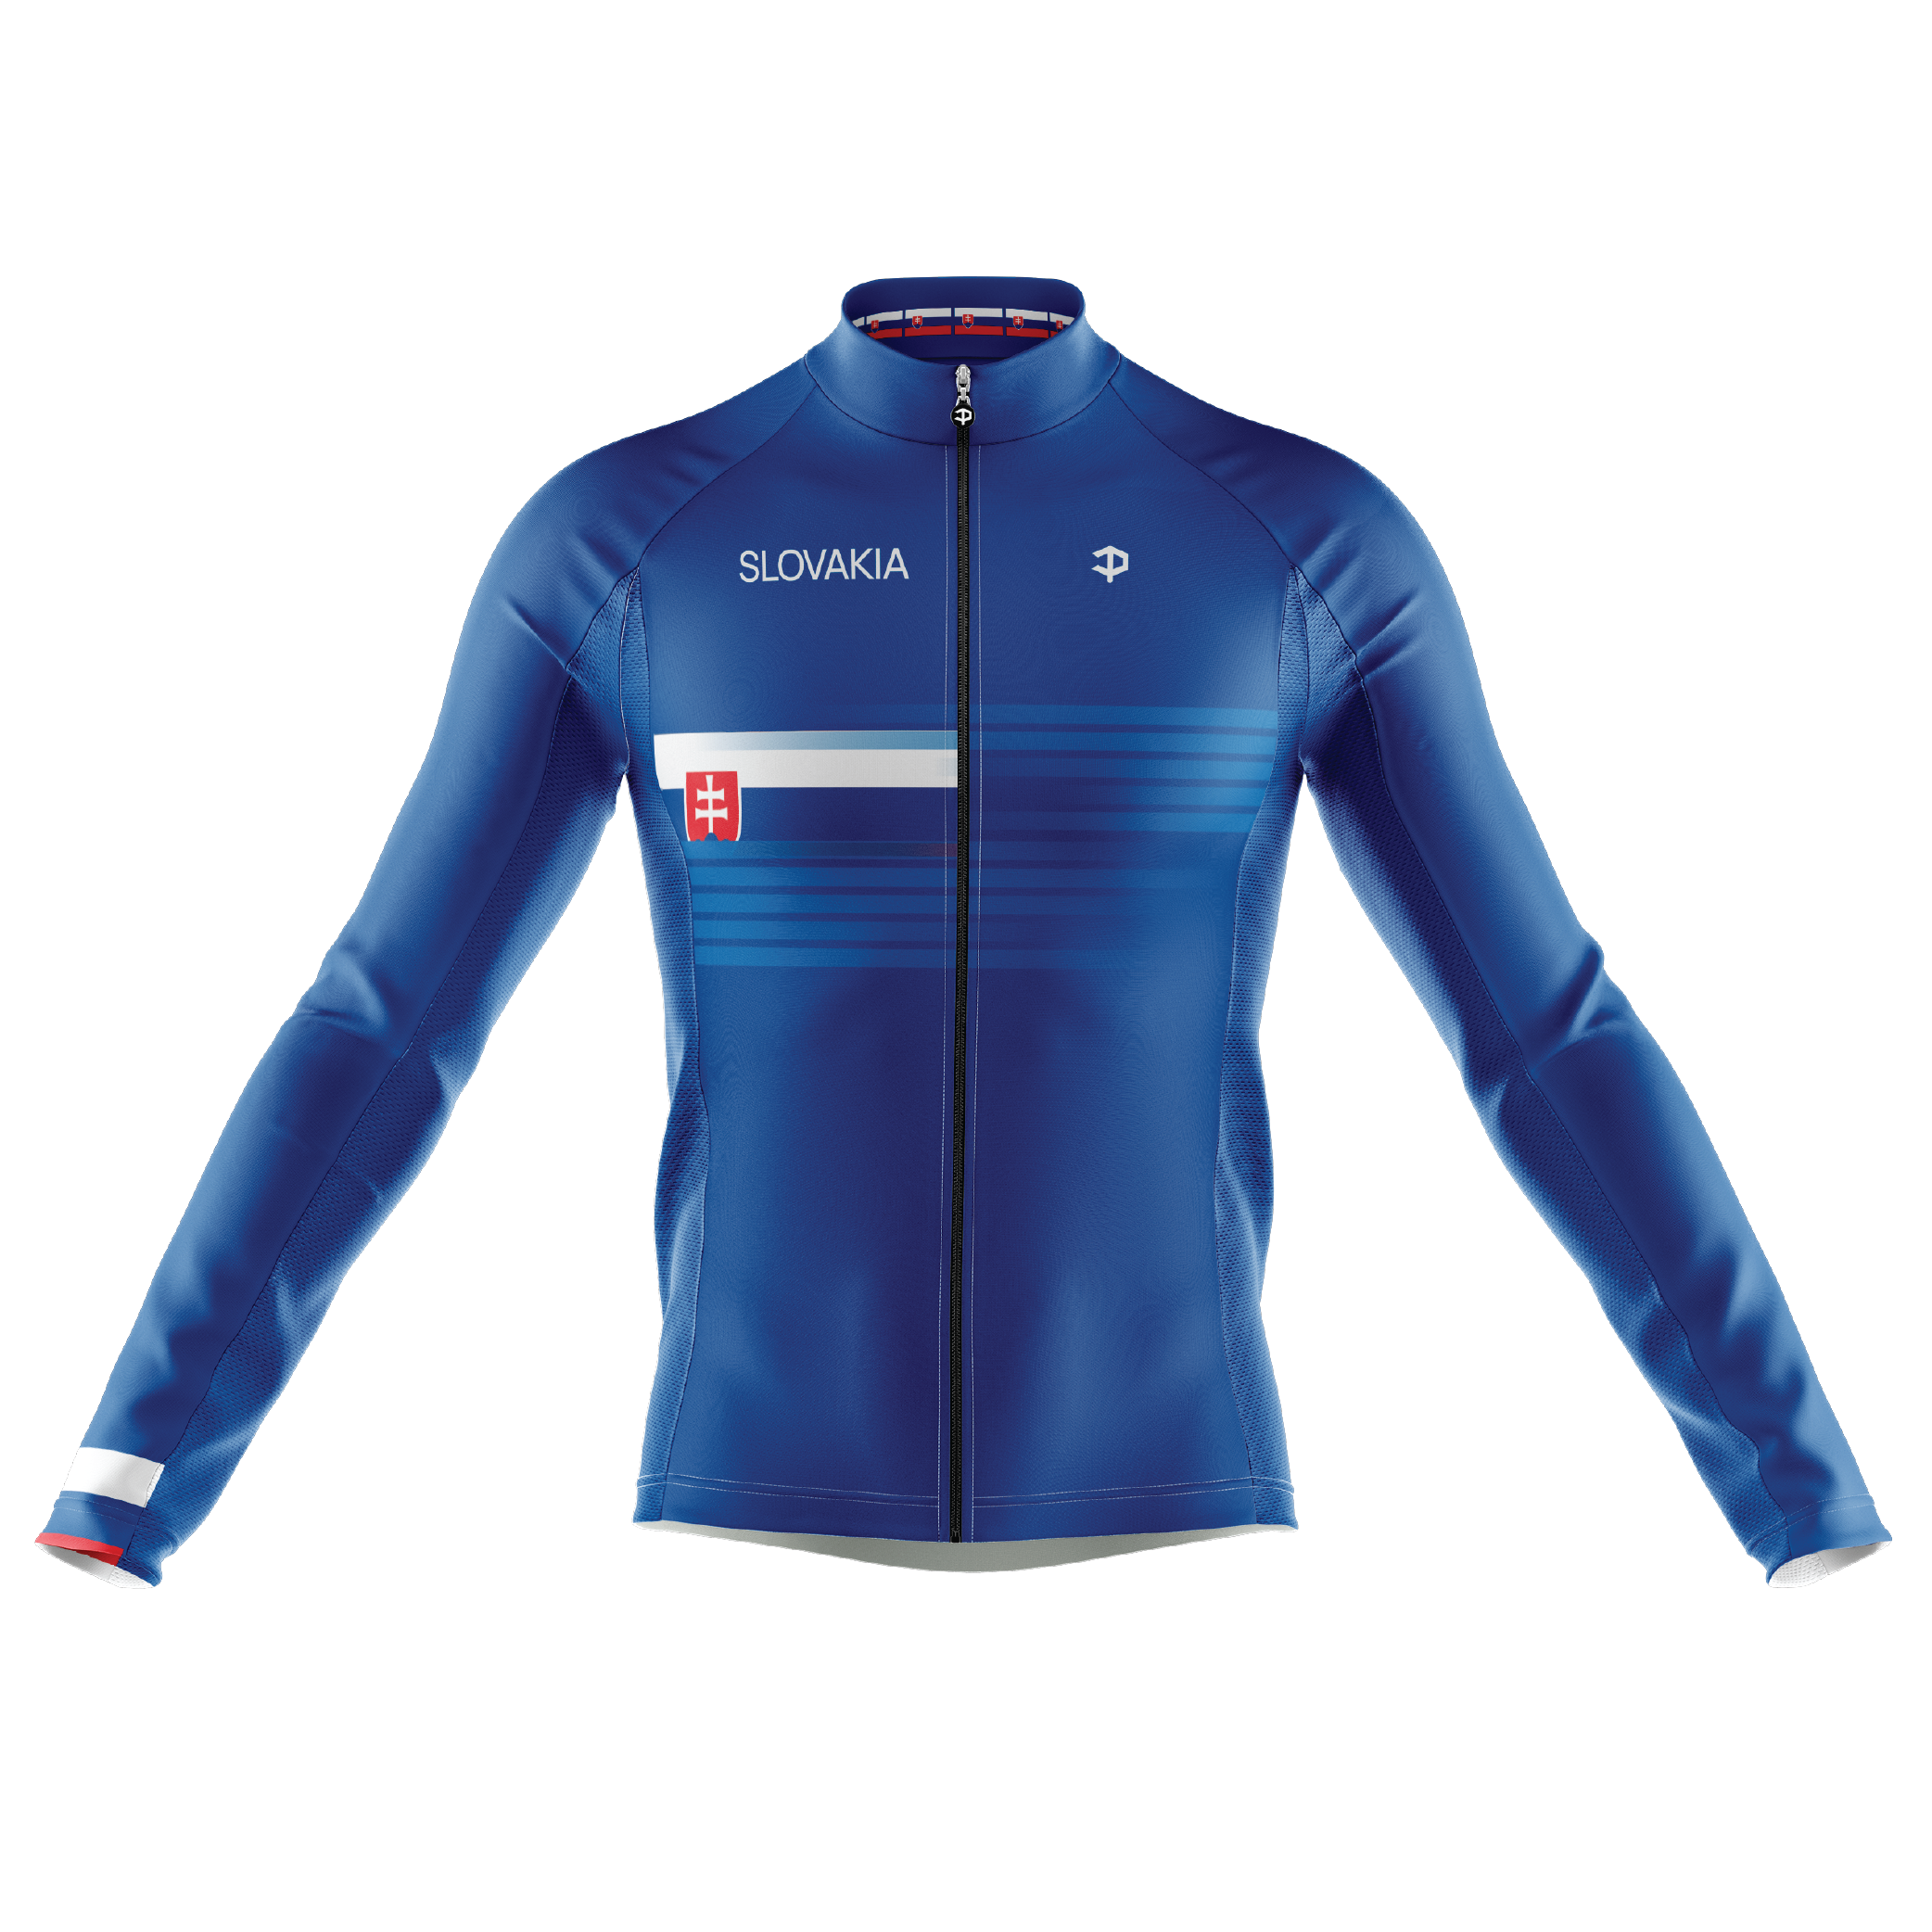 Slovakia Long Sleeve Cycling Jersey